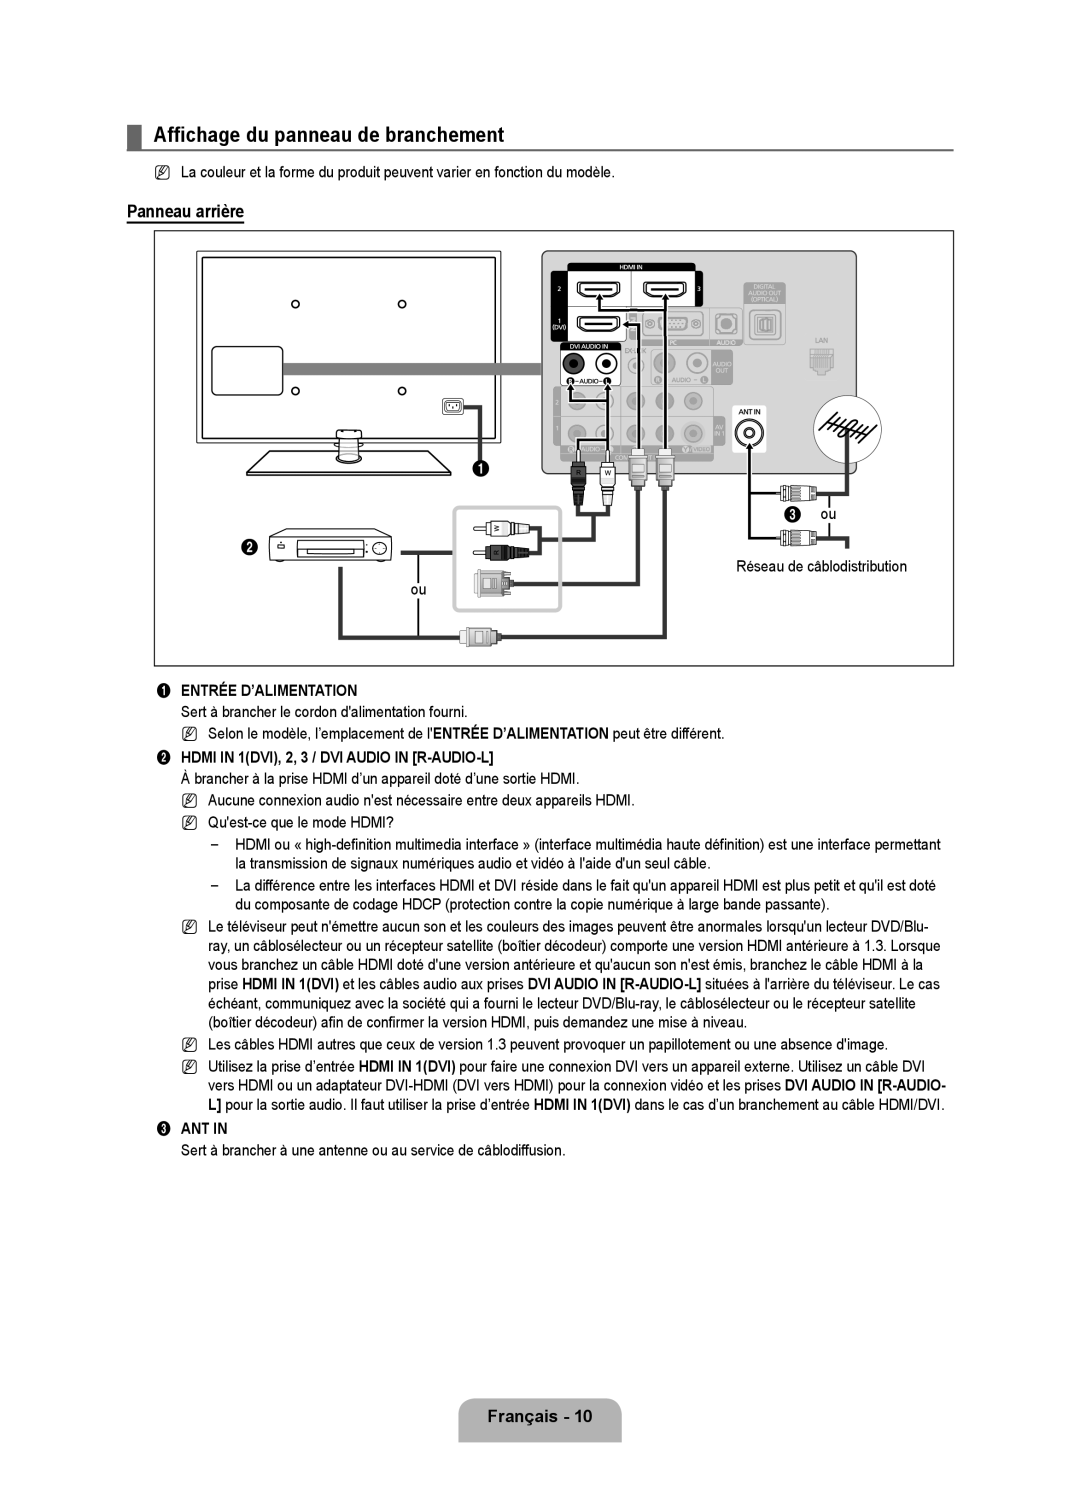 Samsung LN6B60 Affichage du panneau de branchement, Panneau arrière, Réseau de câblodistribution, Entrée D’ALIMENTATION 